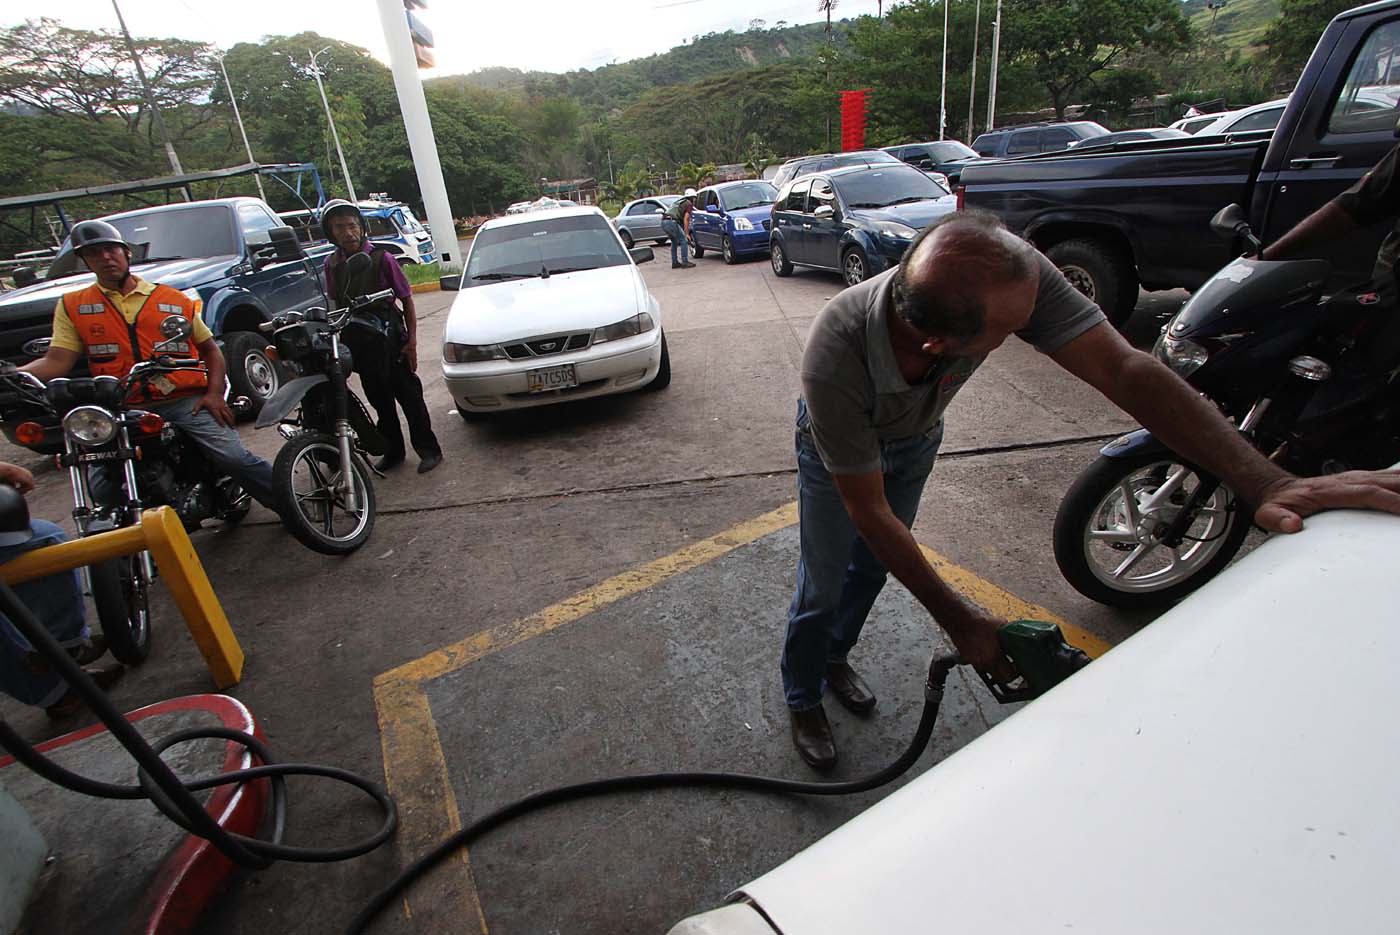 Venezuela abre este lunes estaciones de gasolina en pesos colombianos y reales brasileños